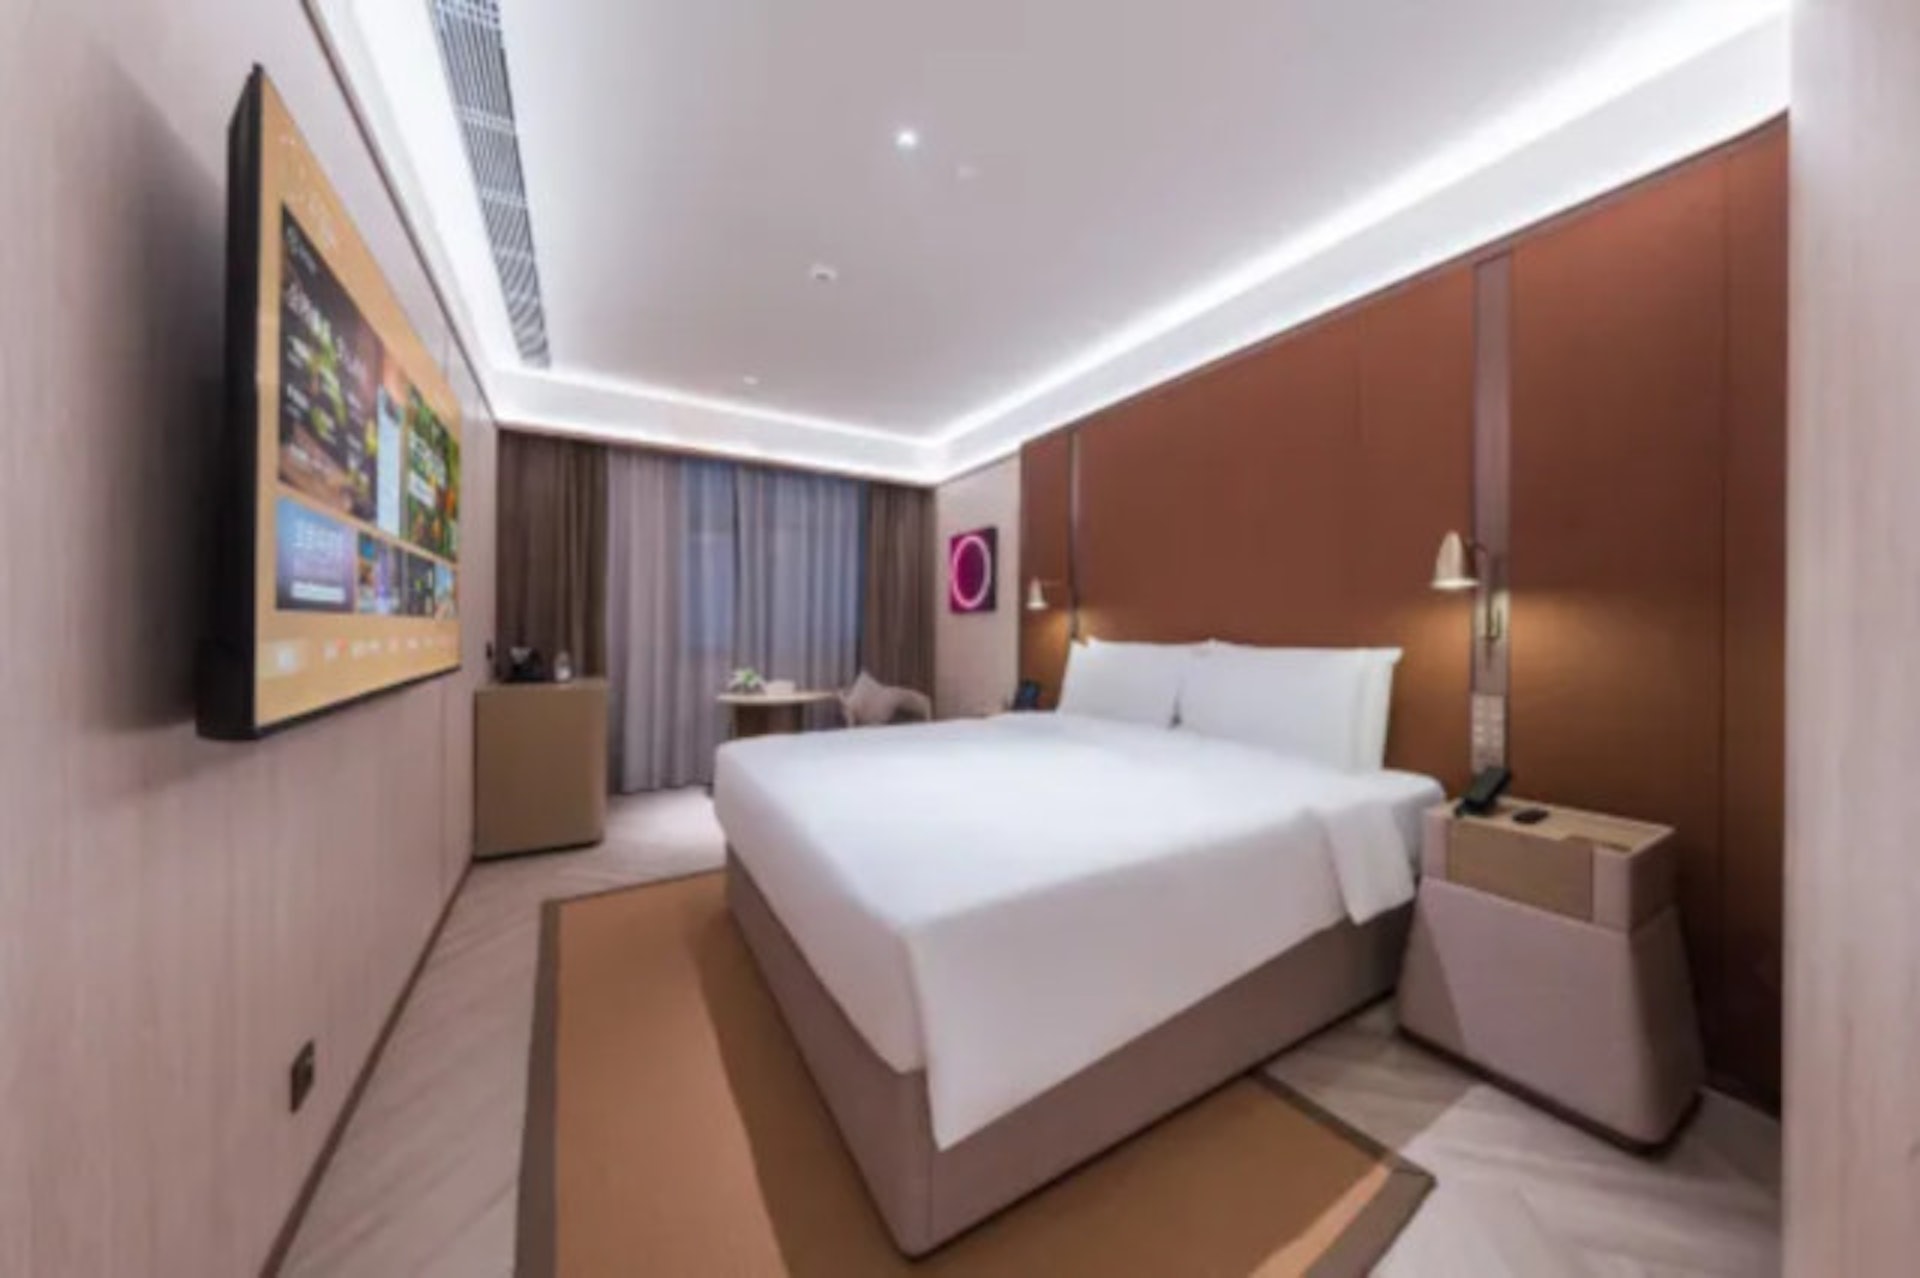 桔子水晶深圳南山新豪方酒店（Crystal Orange Hotel Shenzhen Nanshan Xinhaofang Branch）（Trip。com官方圖片）